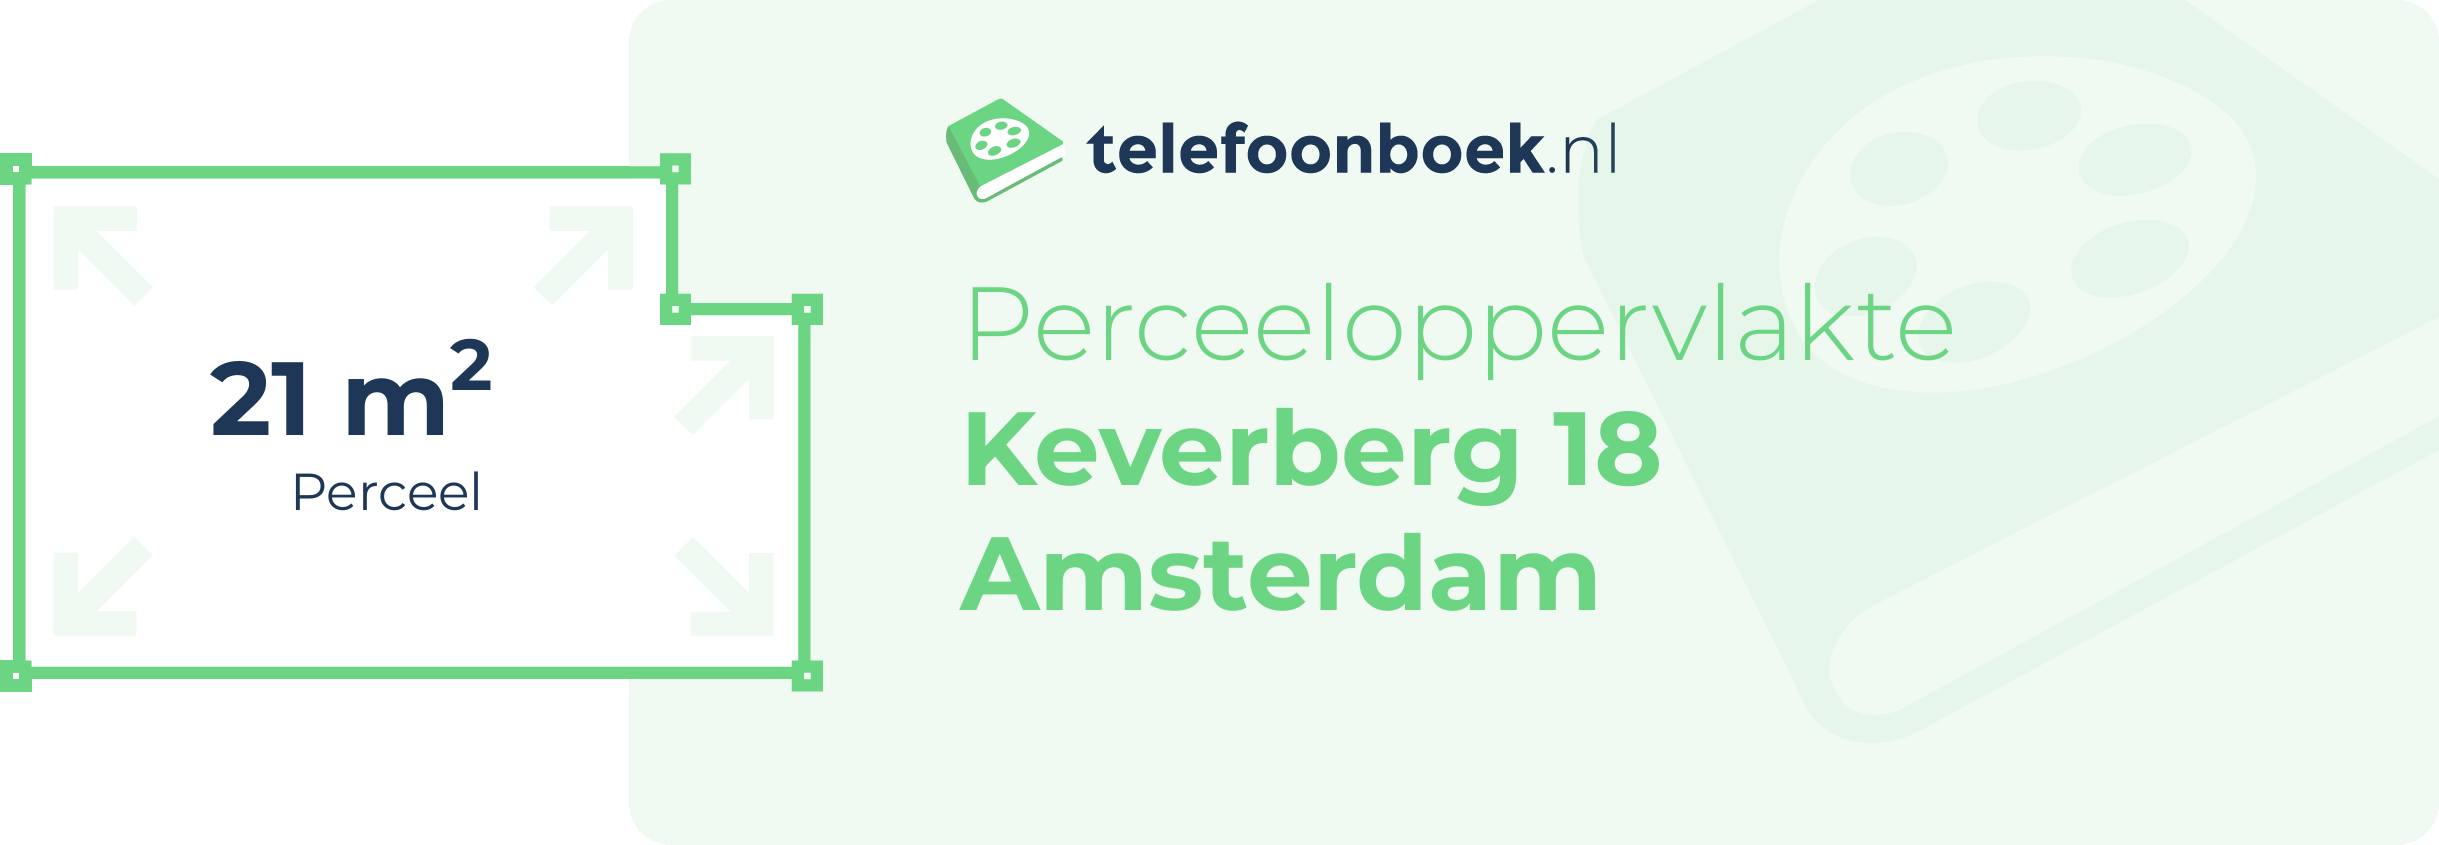 Perceeloppervlakte Keverberg 18 Amsterdam